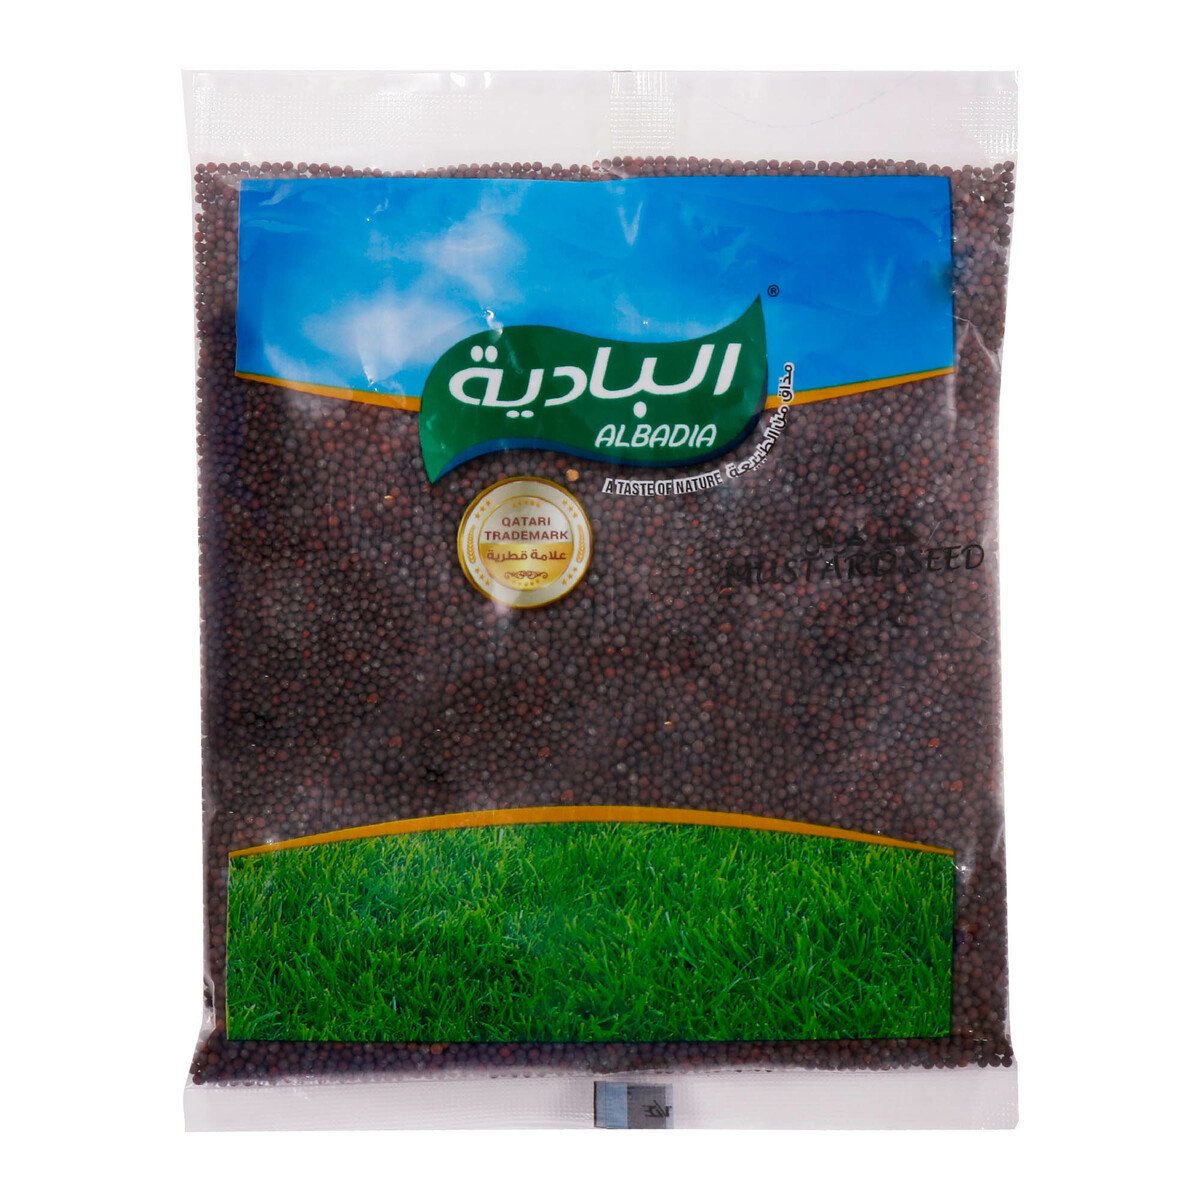 Al Badia Mustard Seed 200g